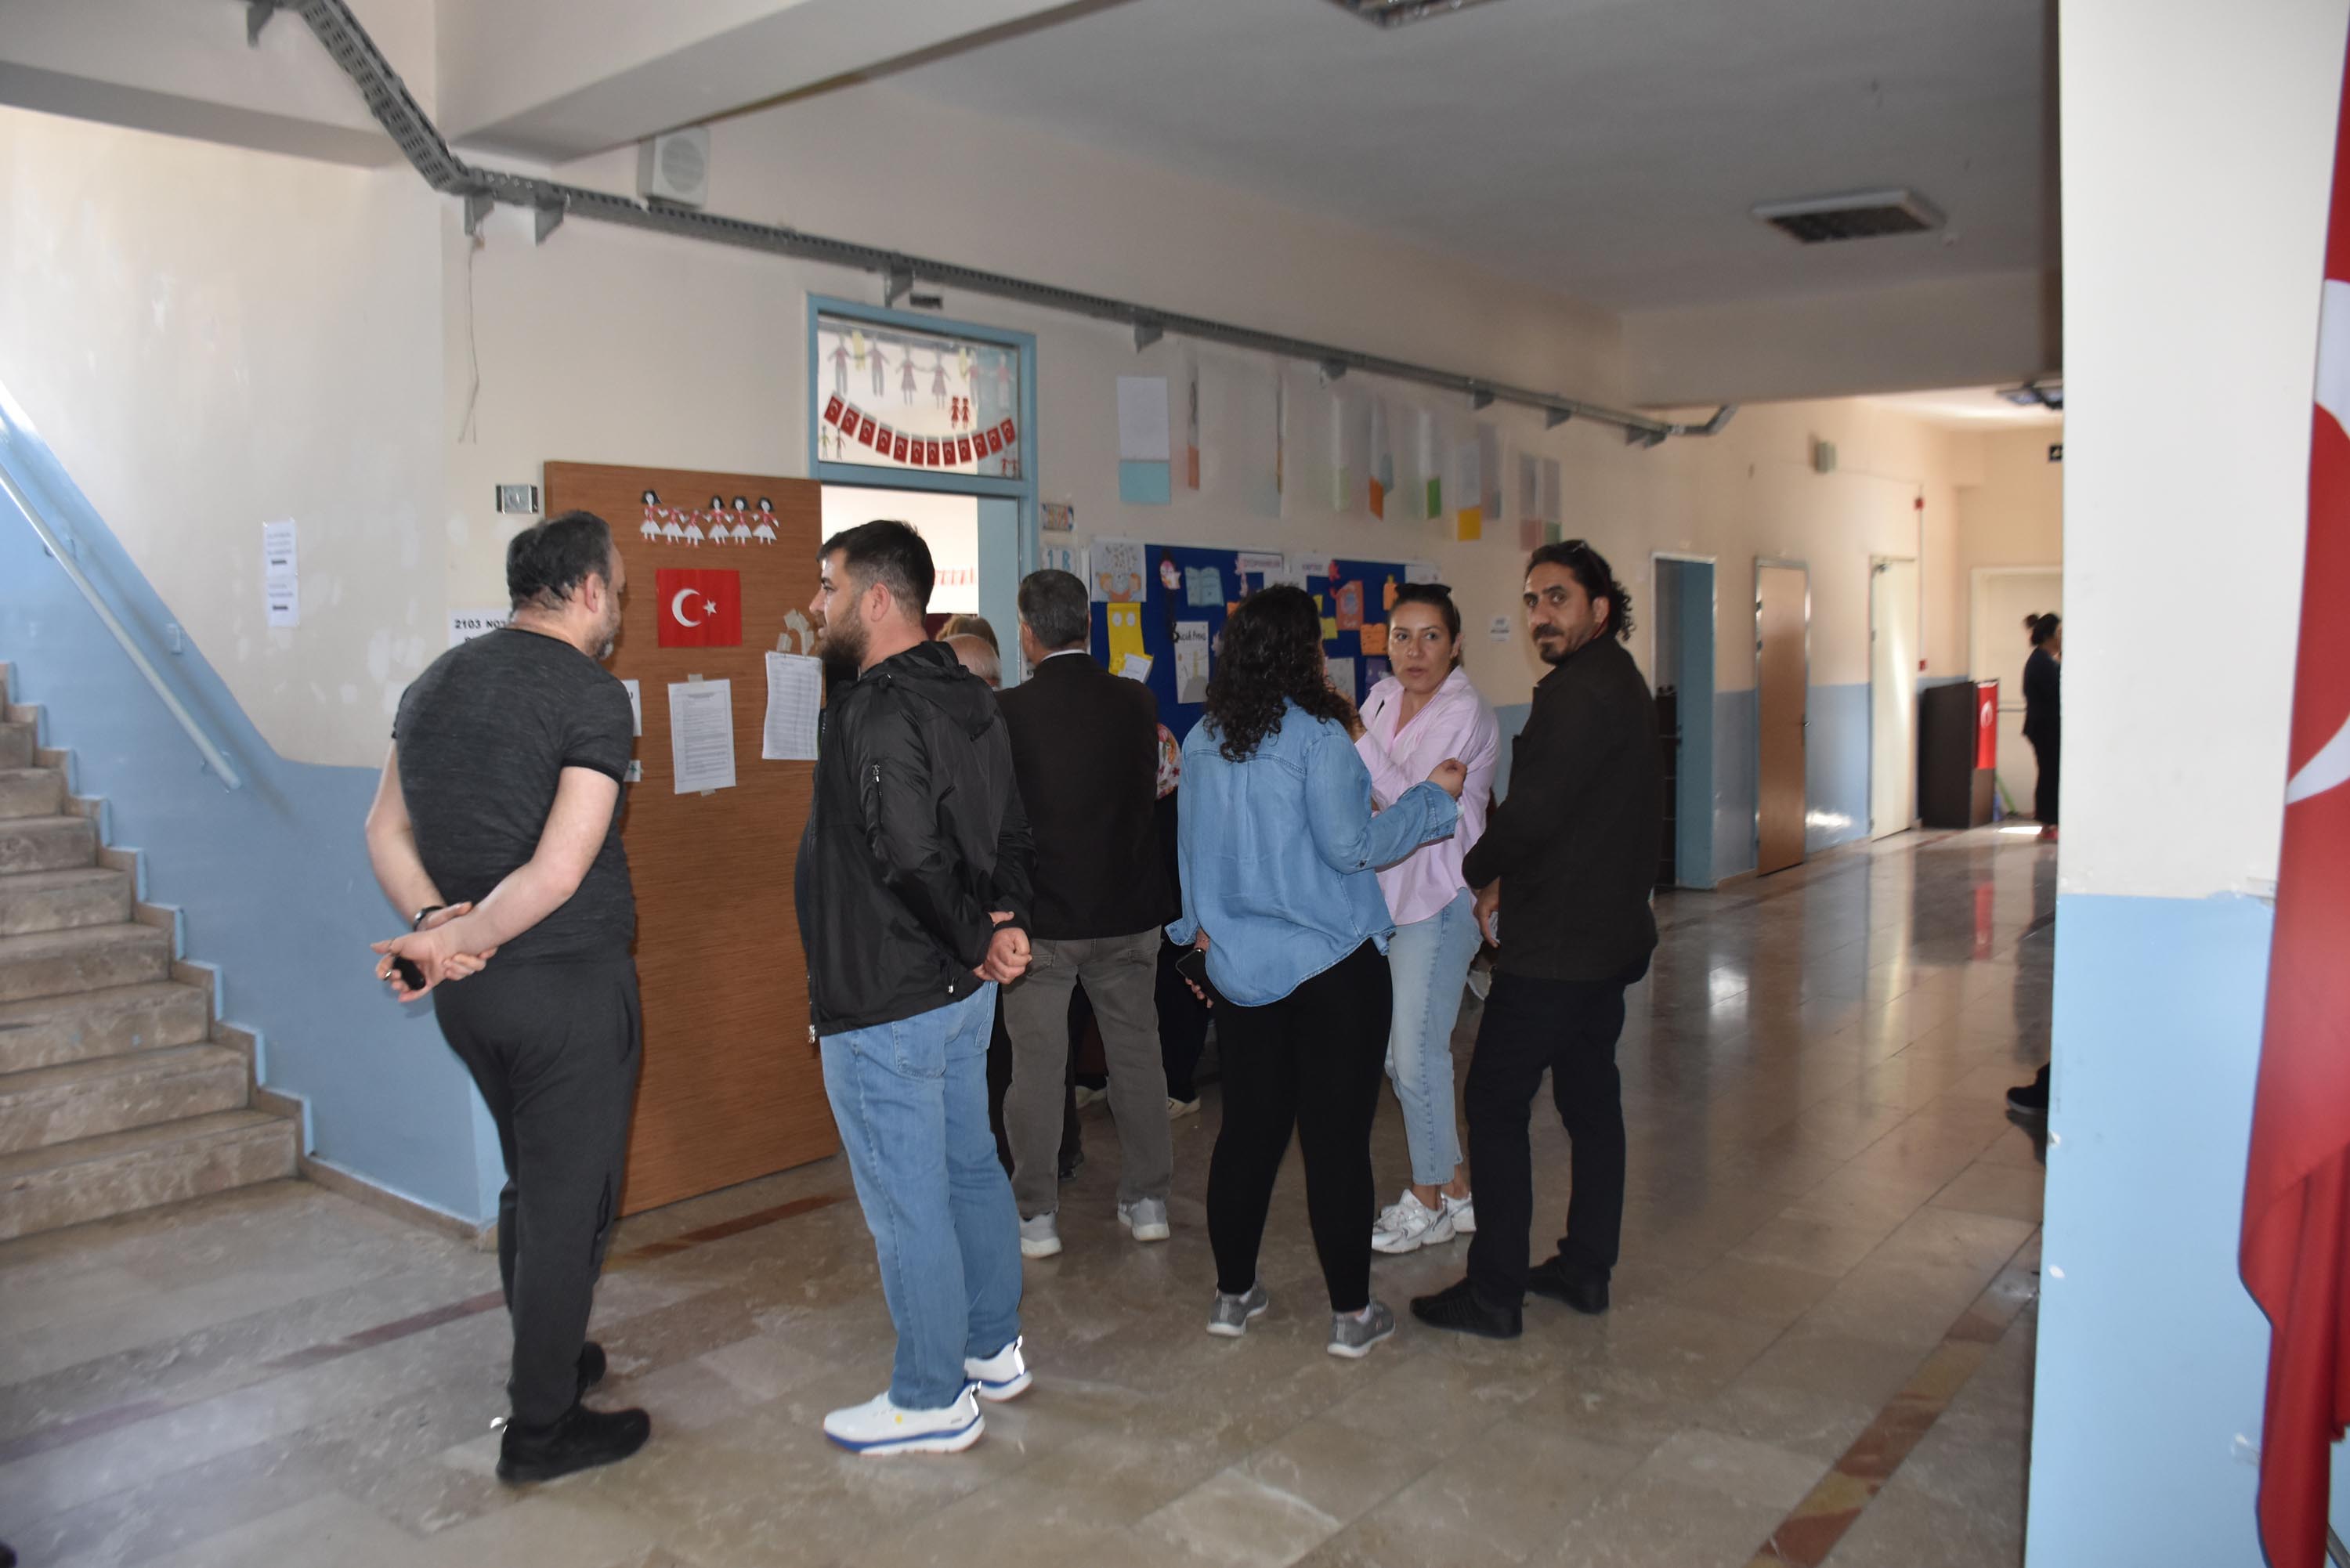 İzmir'deki okullarda oy kullanma yoğunluğu